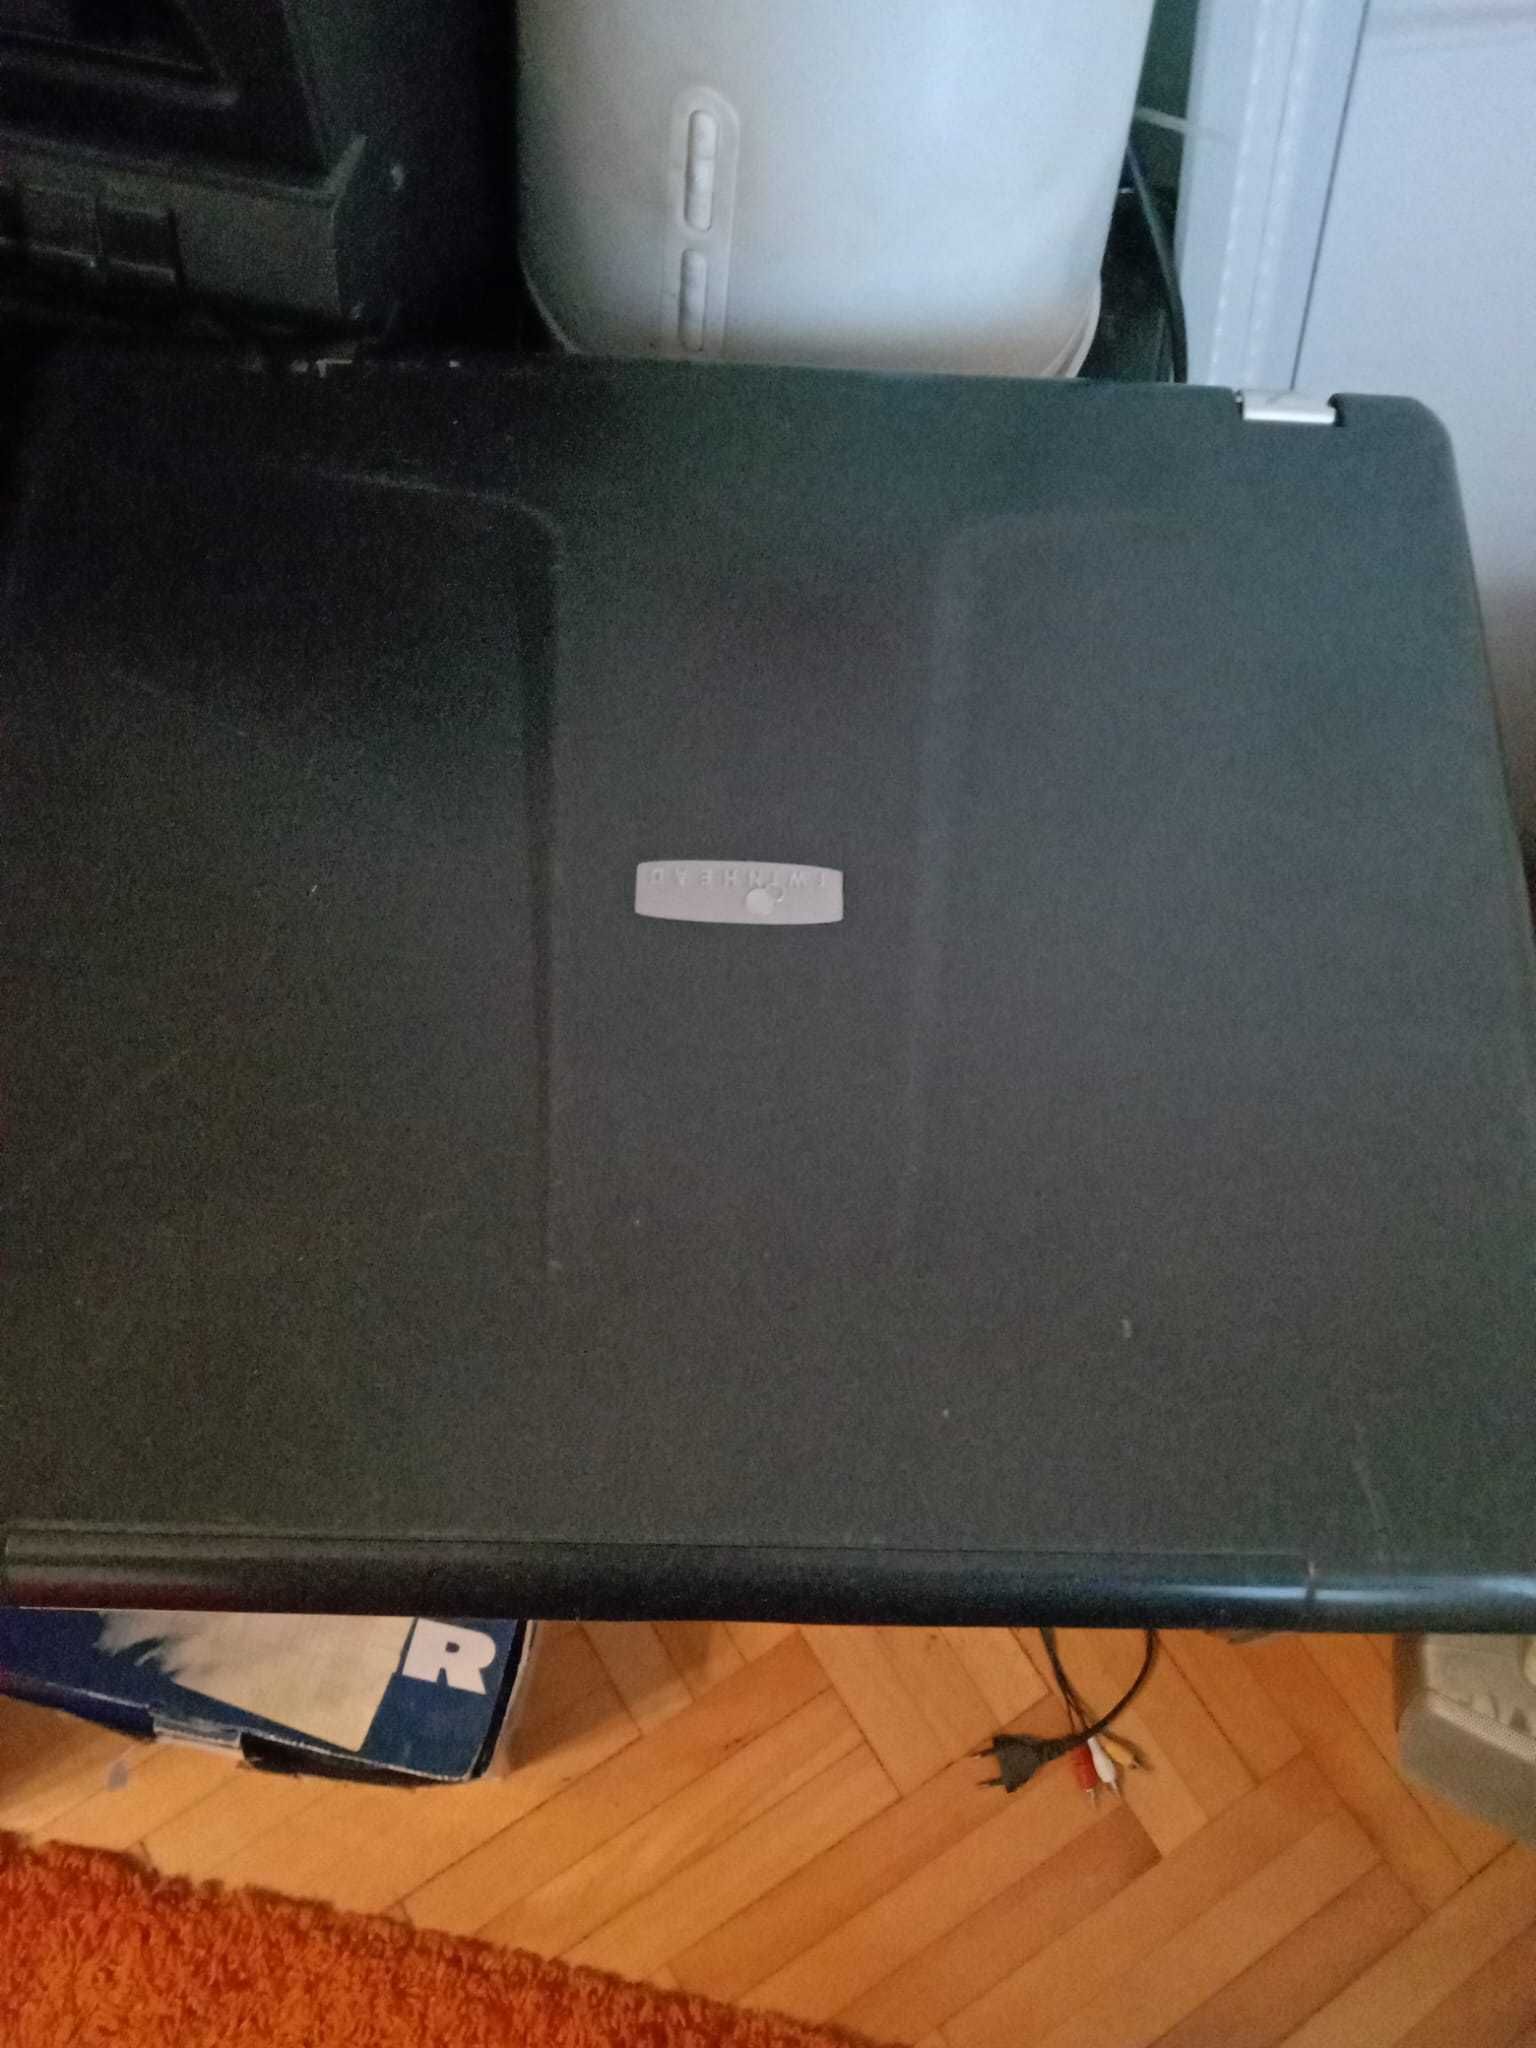 Laptop vechi pentru piese sau programul rabla